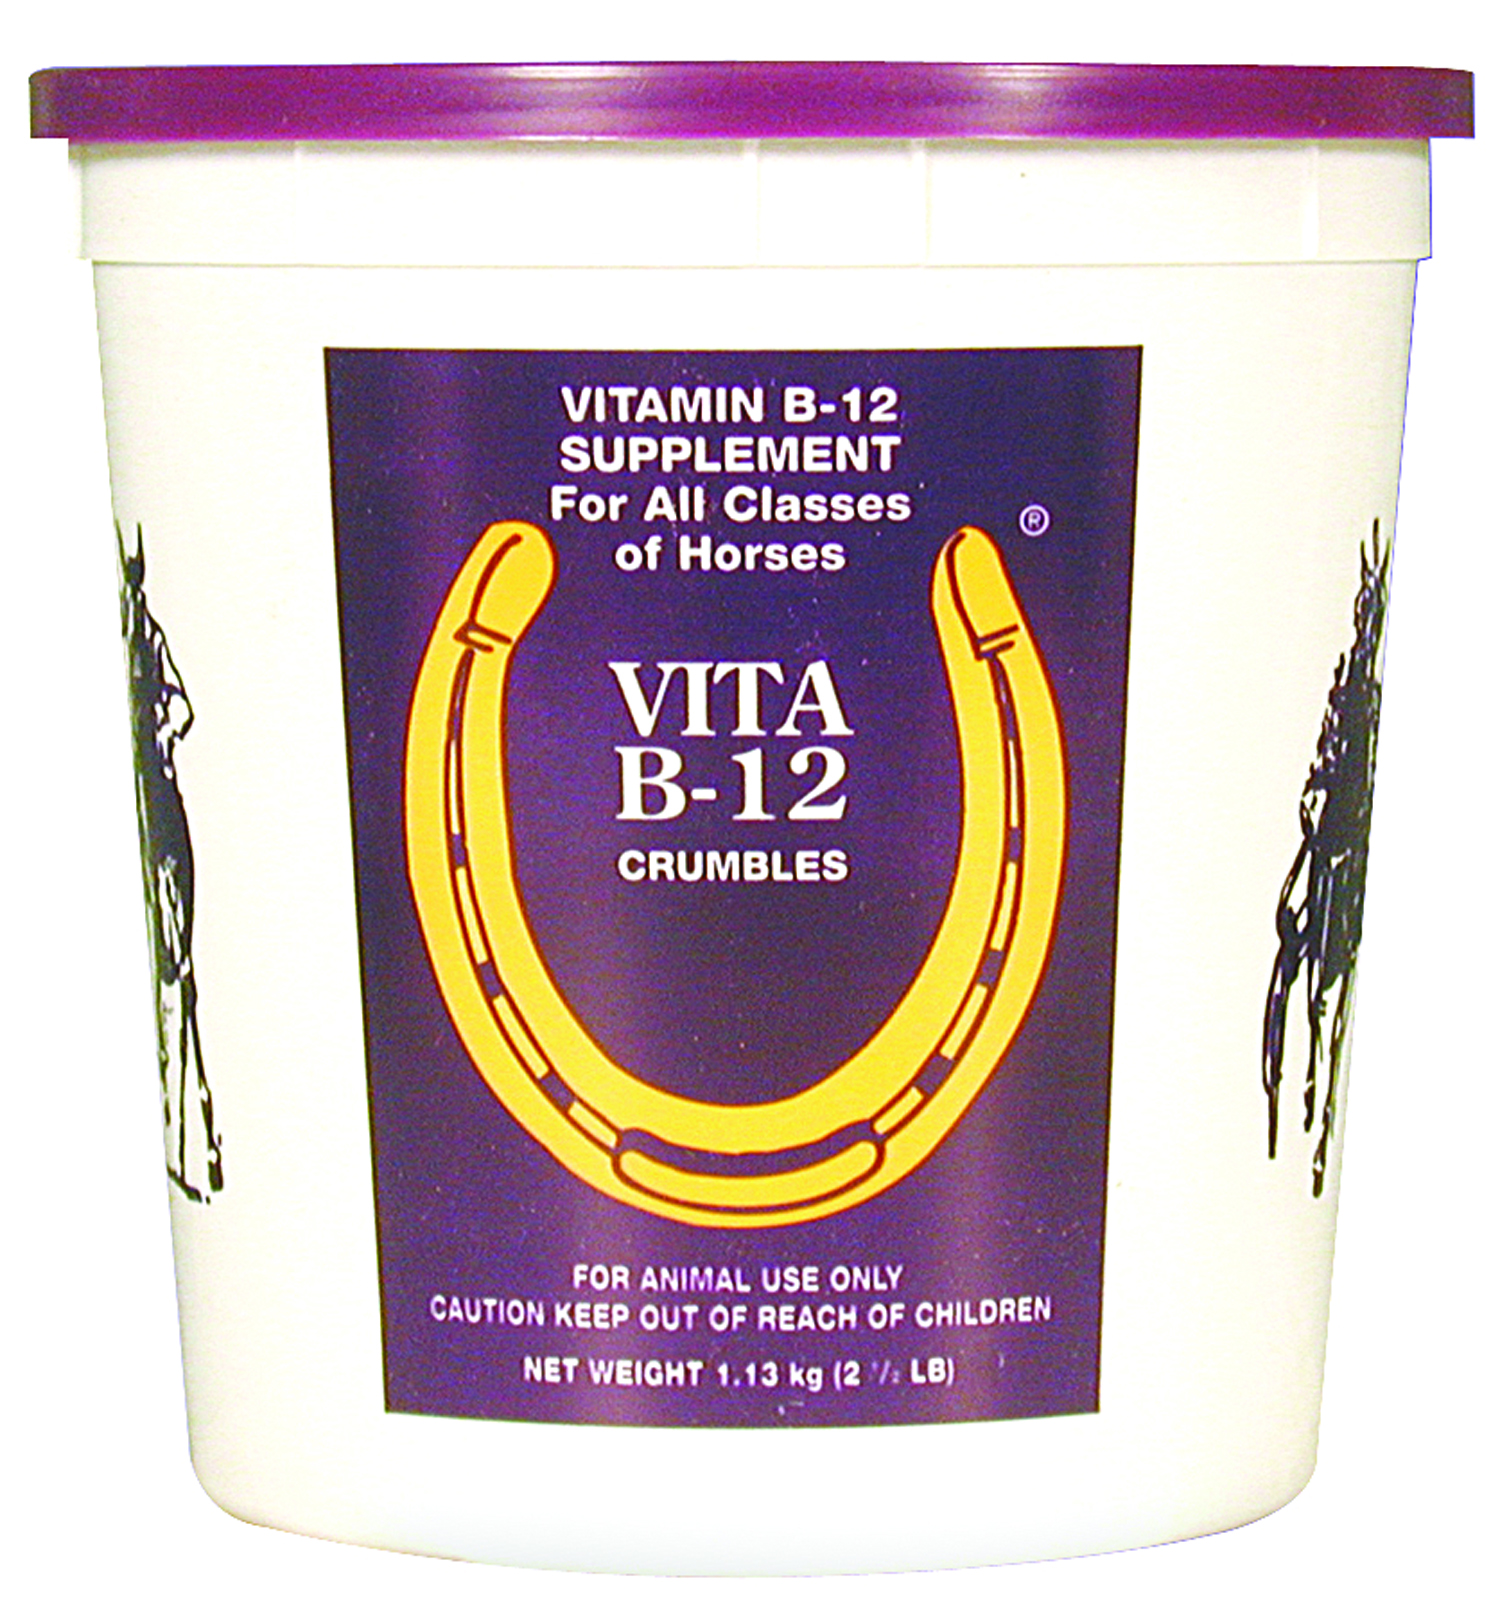 Vita B12 Crumble - 2.5 lb